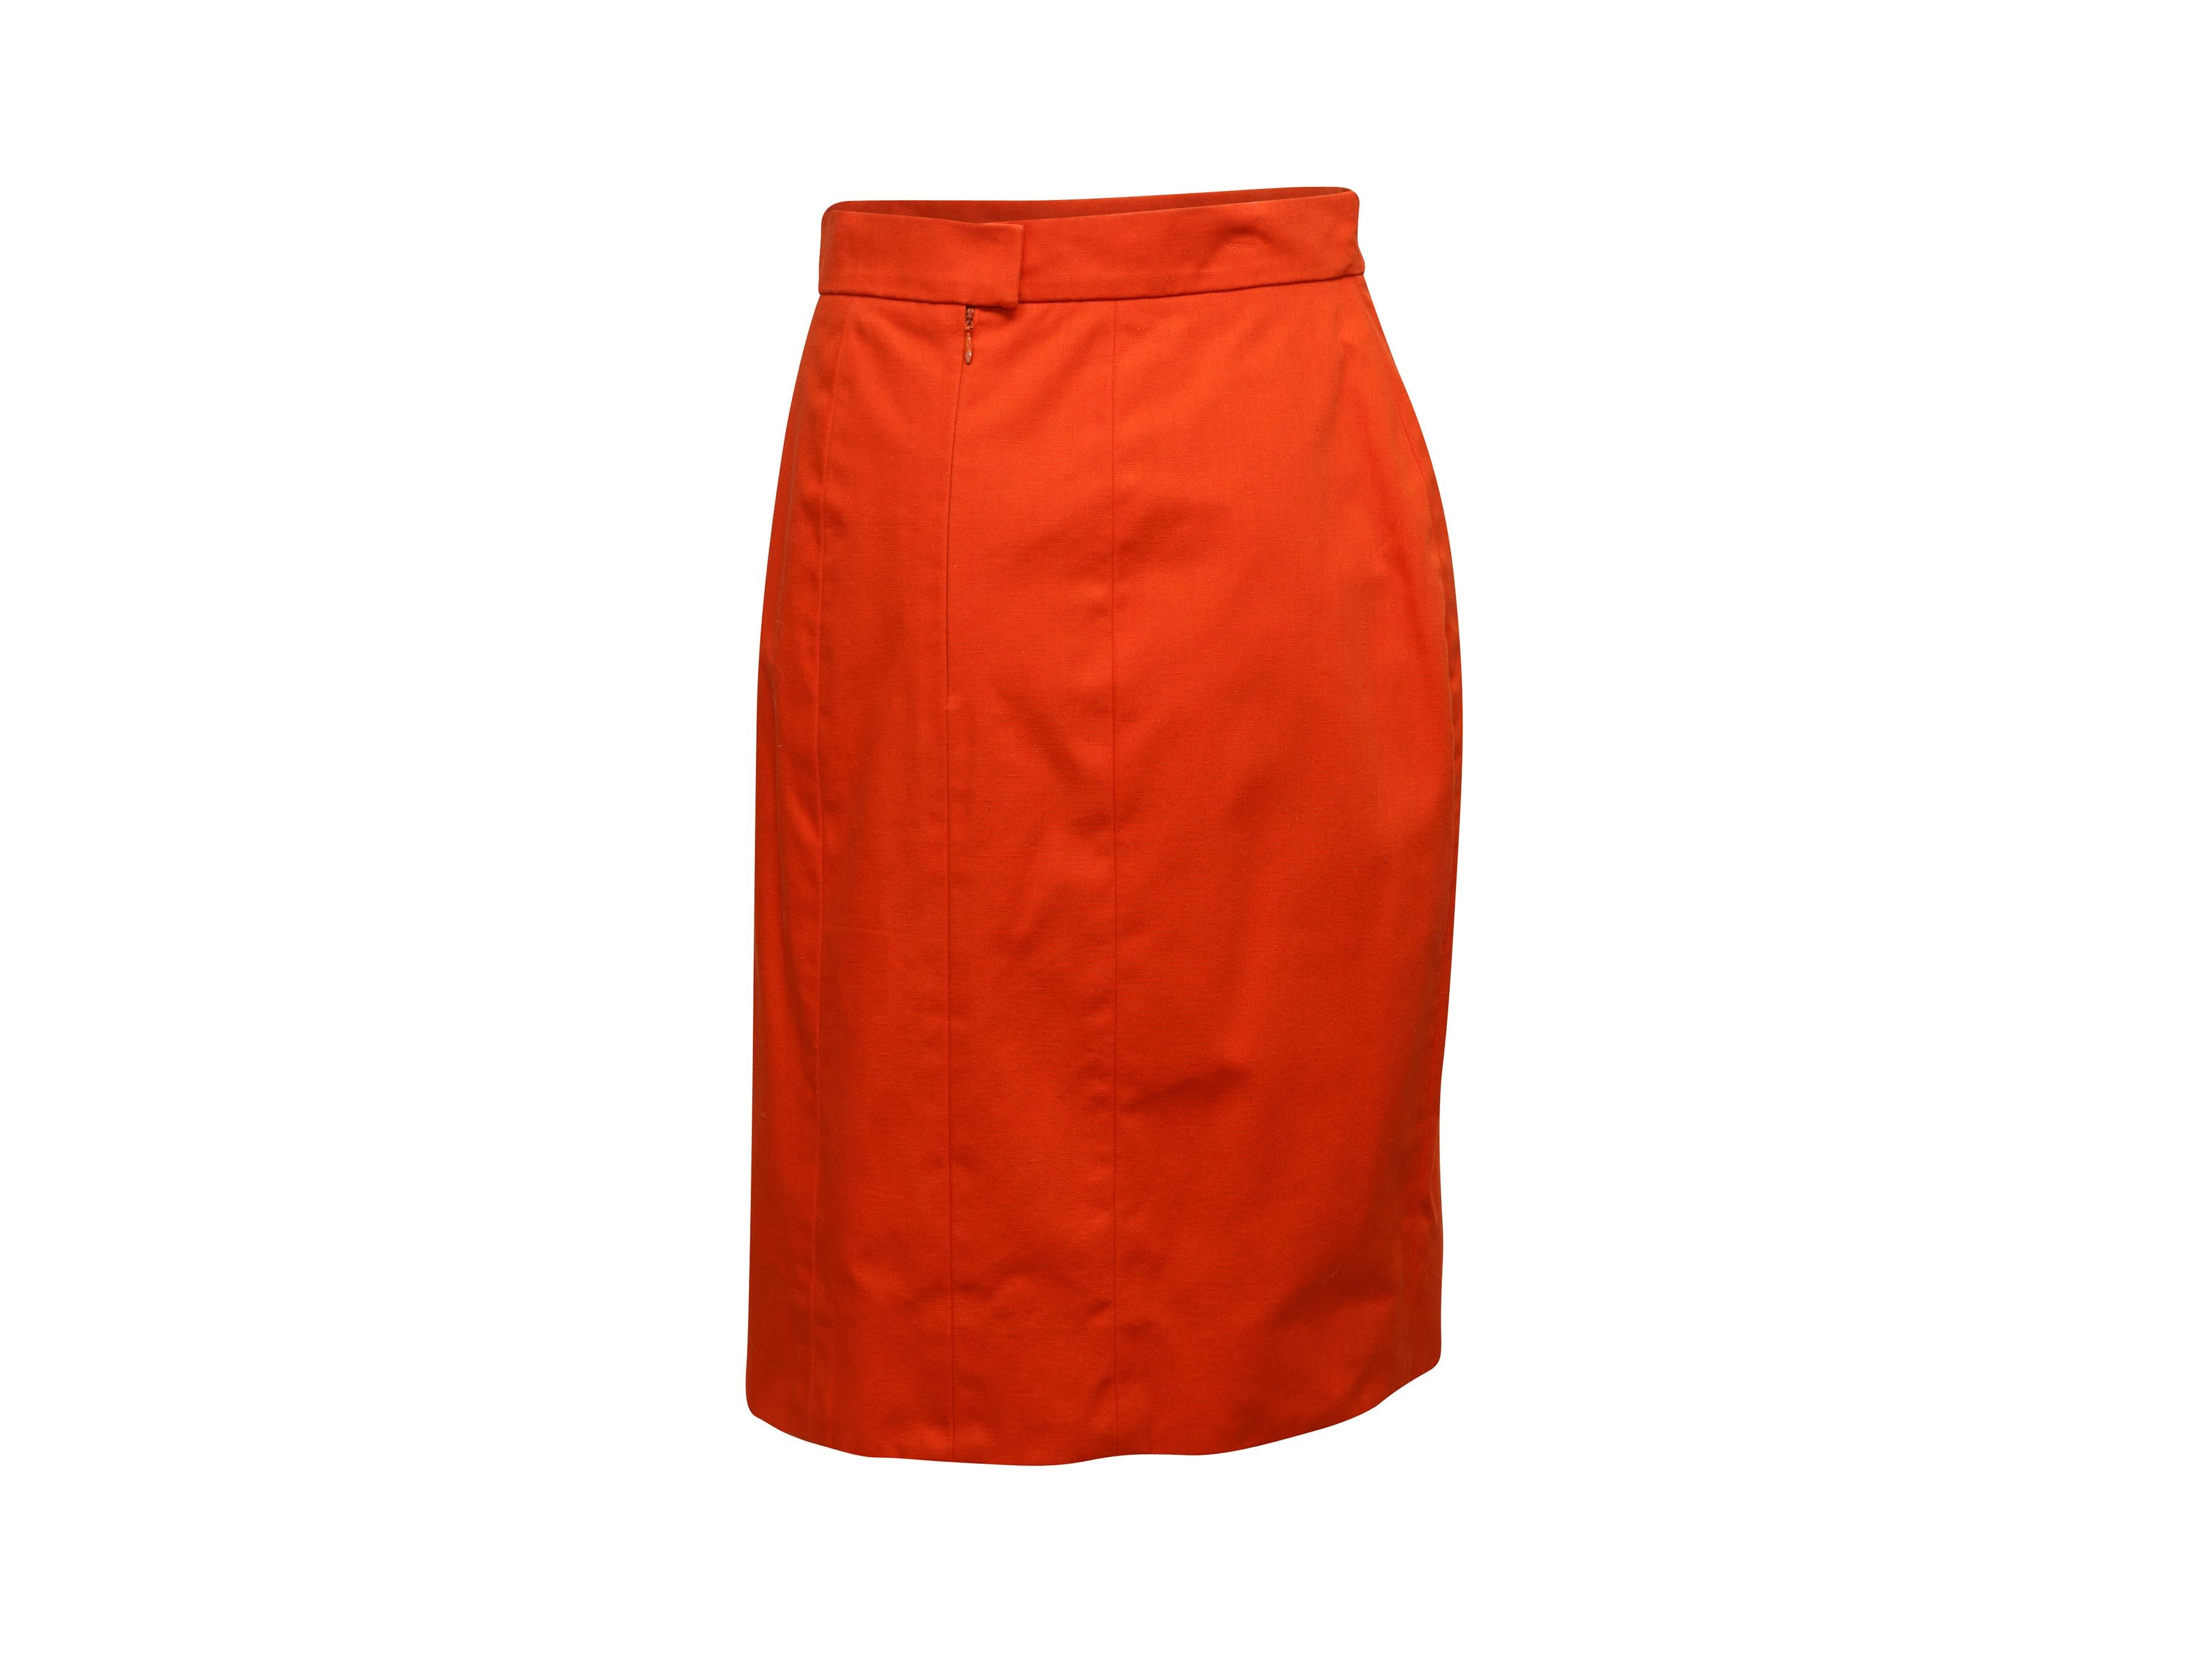 Women's Chanel Boutique Orange Skirt Suit